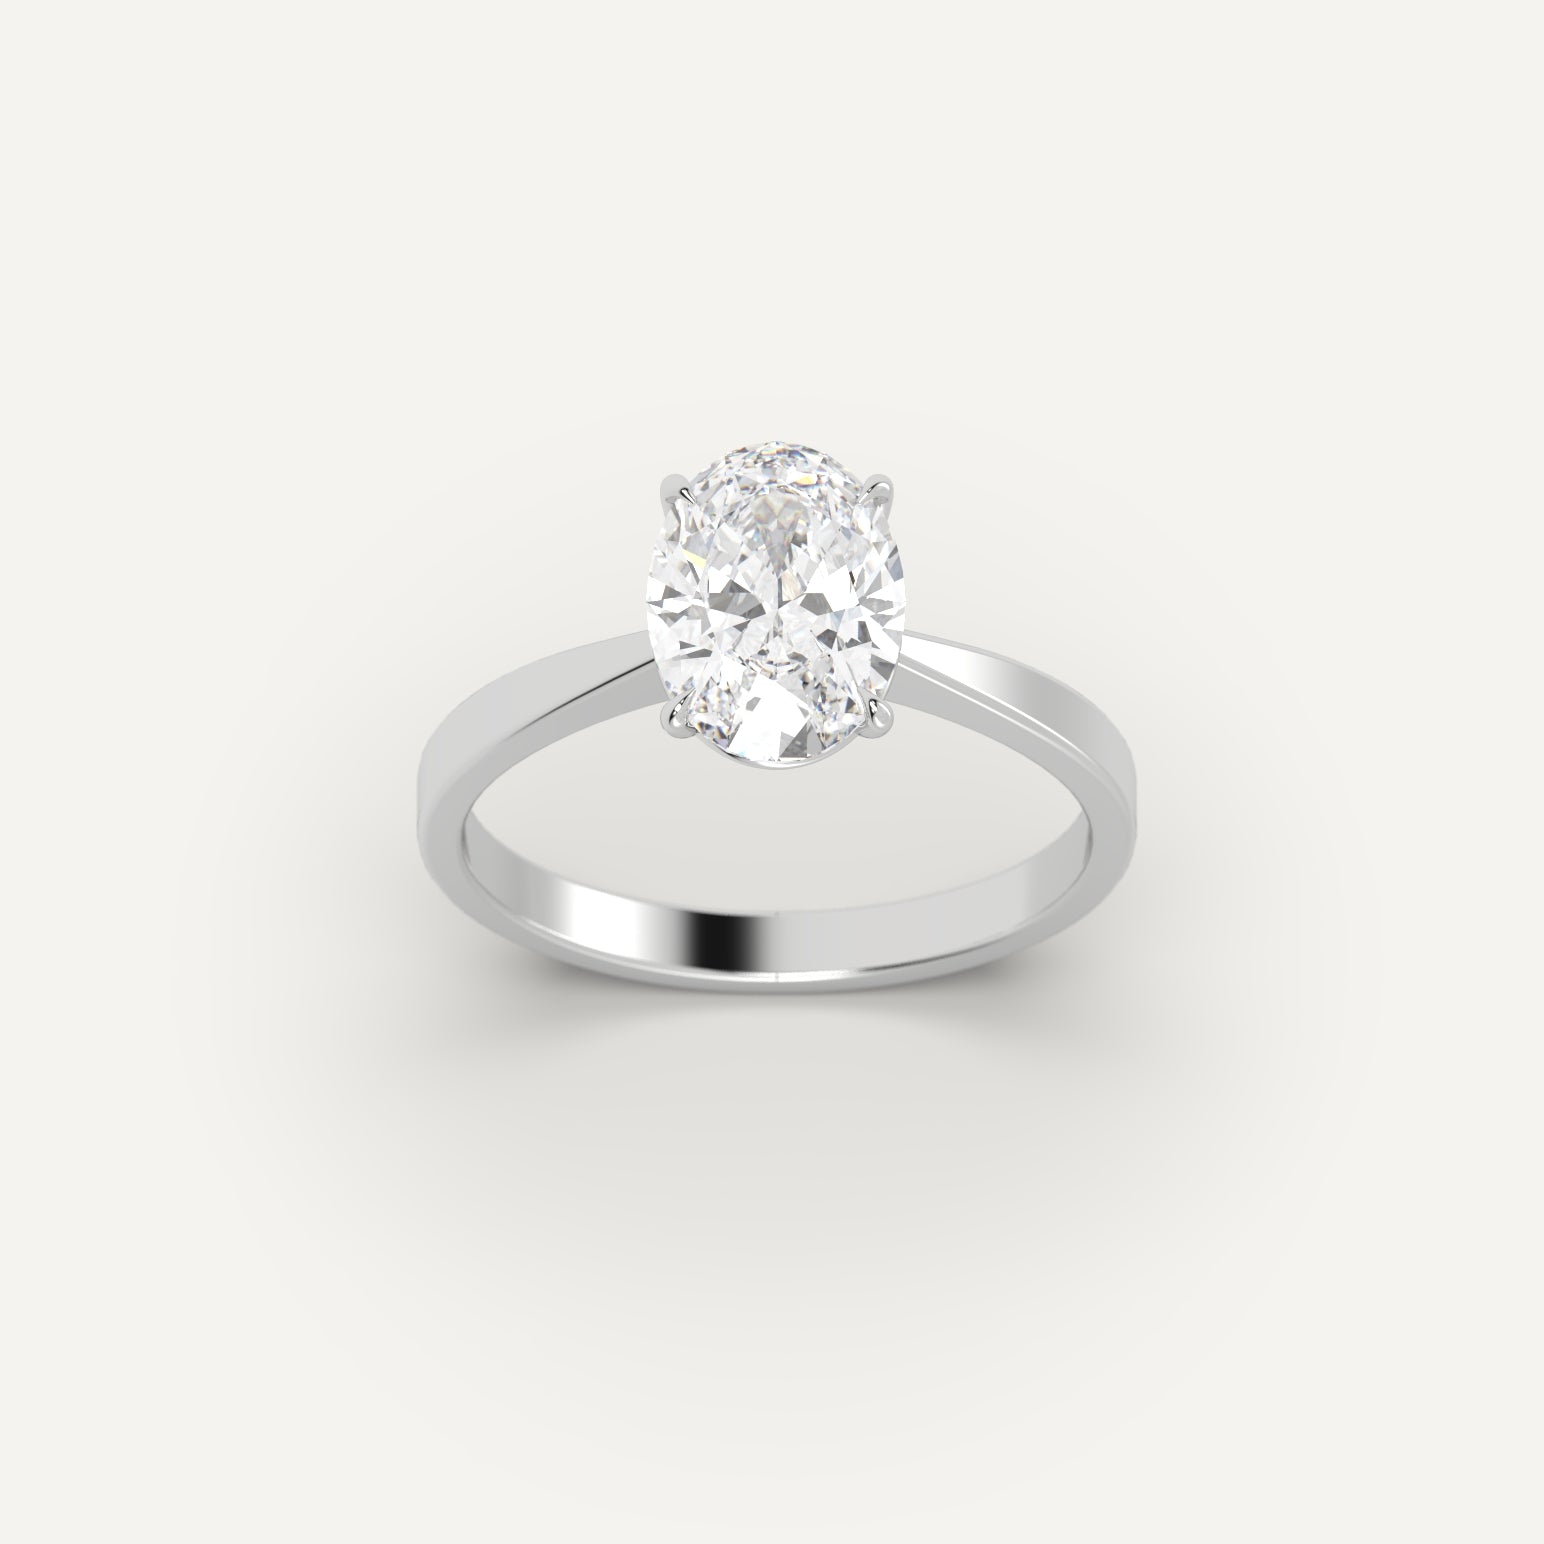 White Gold 2 Carat Engagement Ring